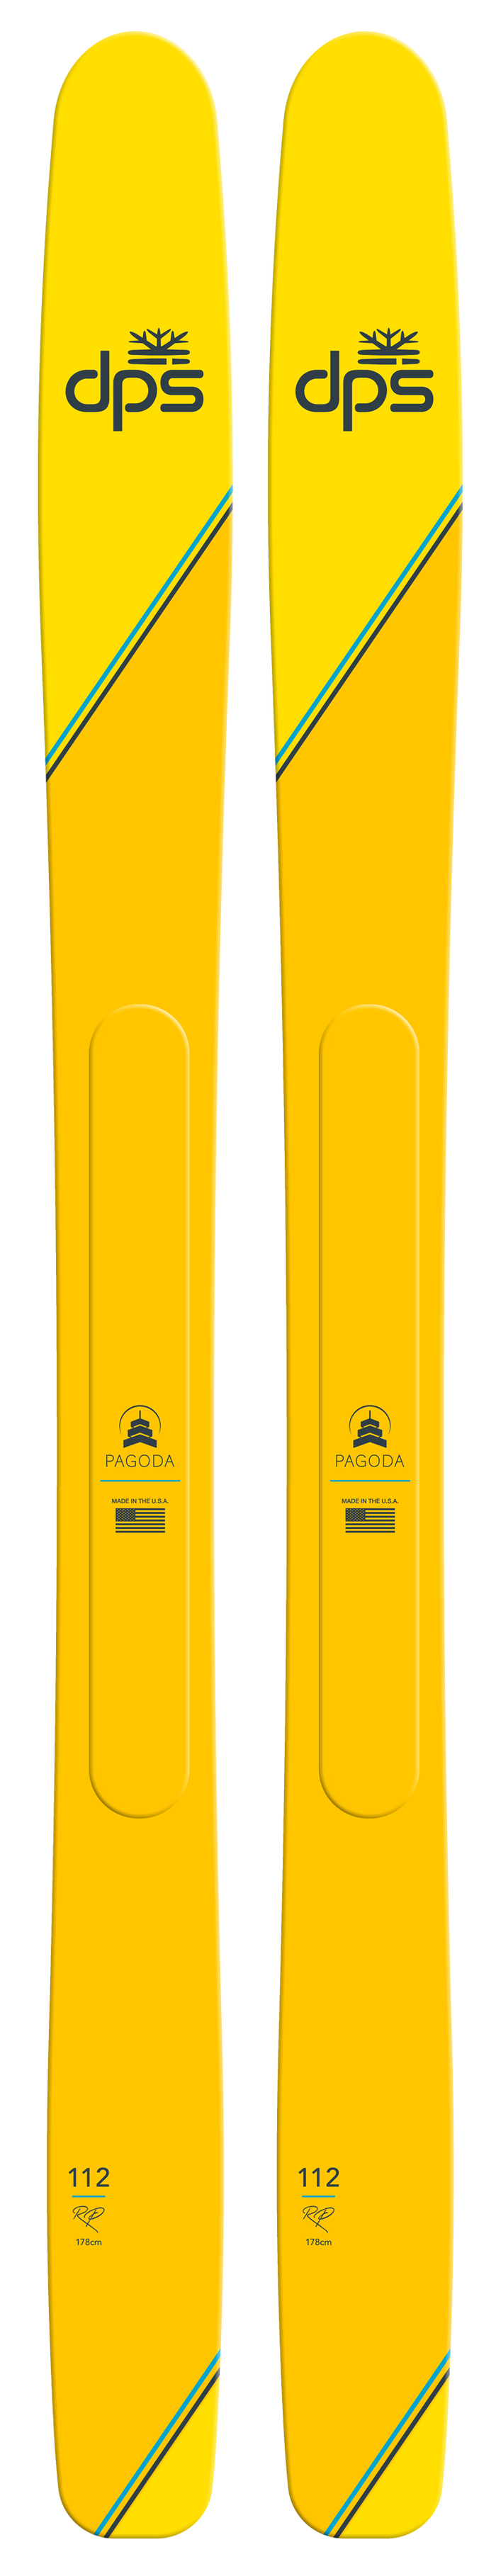 topsheet of dps pagoda 112 yellow skis